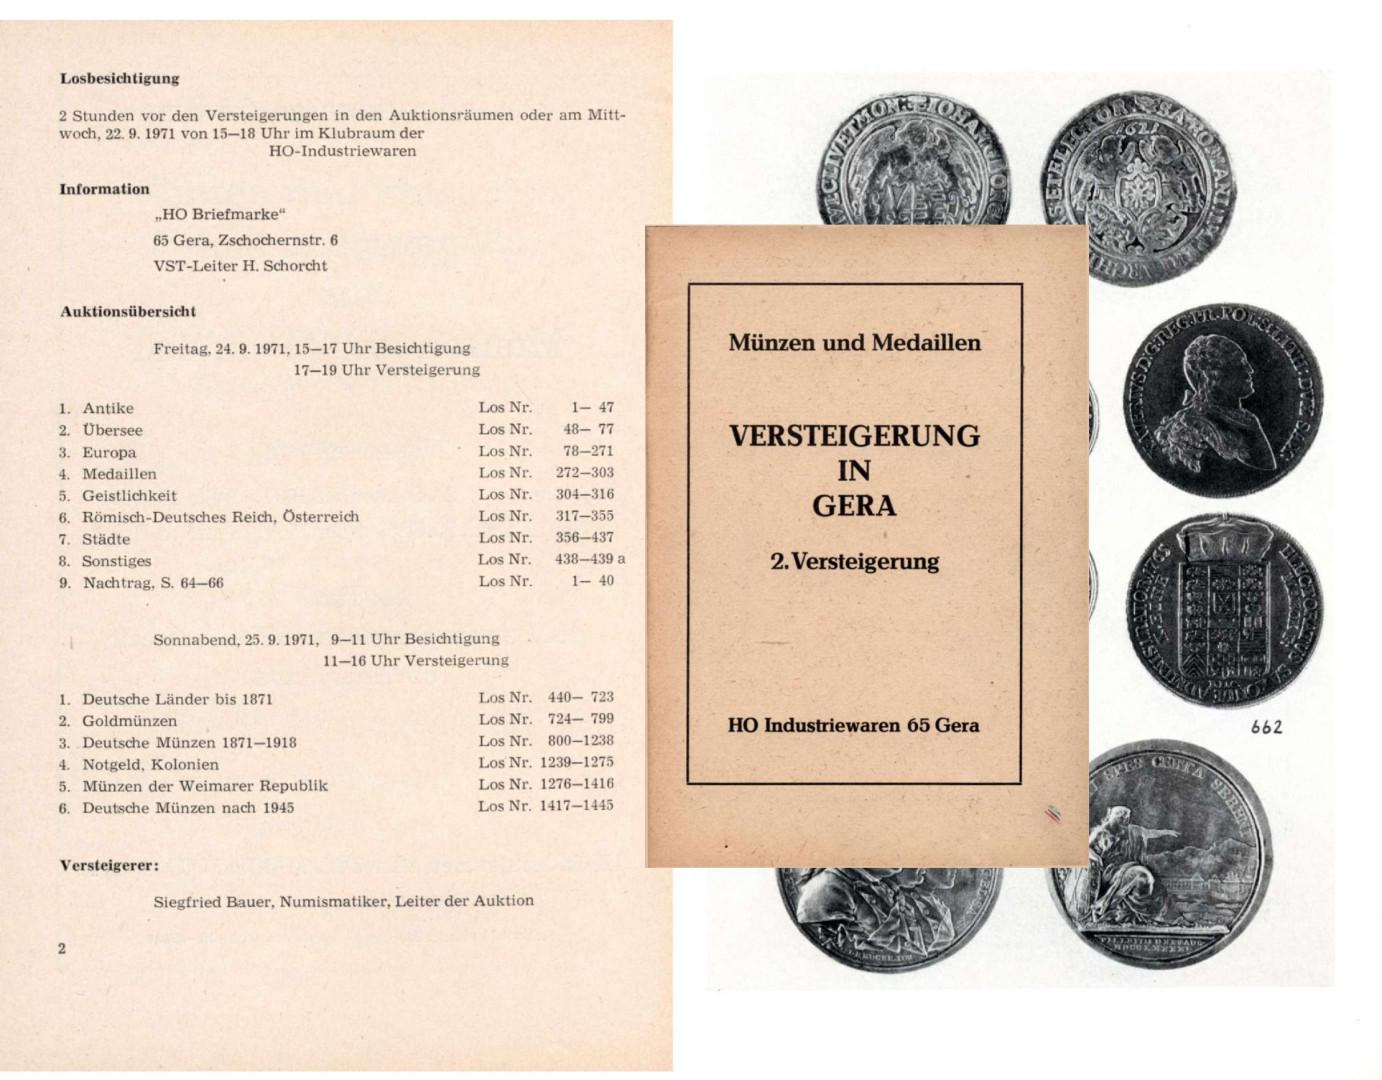  HO Industriewaren 65 Gera Münzen und Medaillen Versteigerung in Gera - 2. Versteigerung 1971   